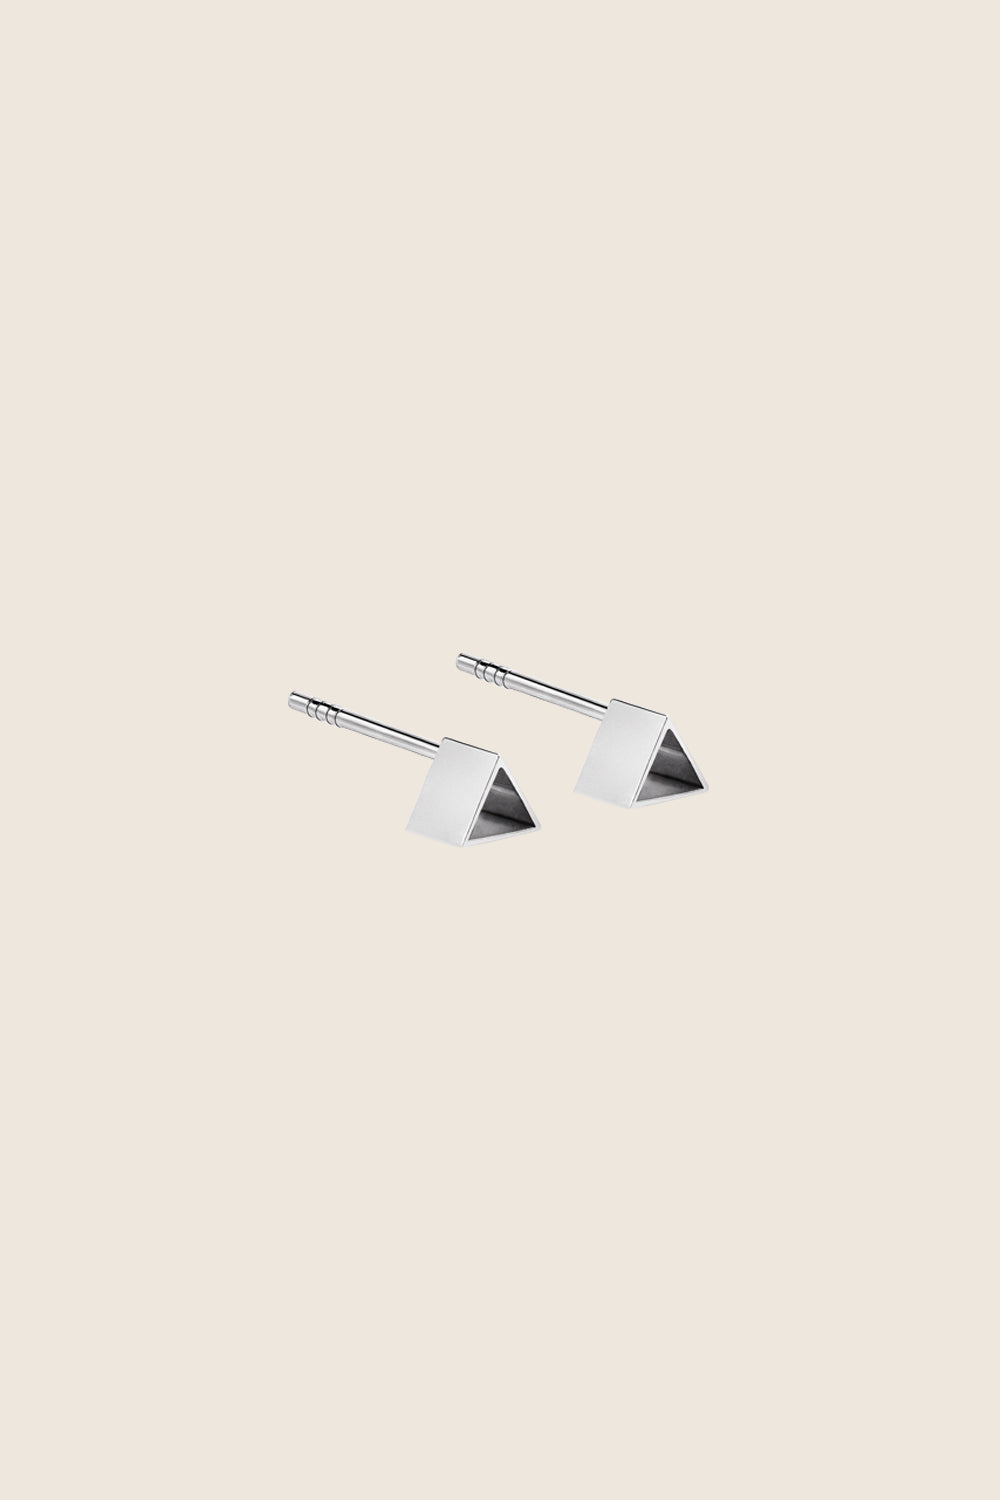 małe kolczyki trójkąty srebro 925 LARO marka UMIAR